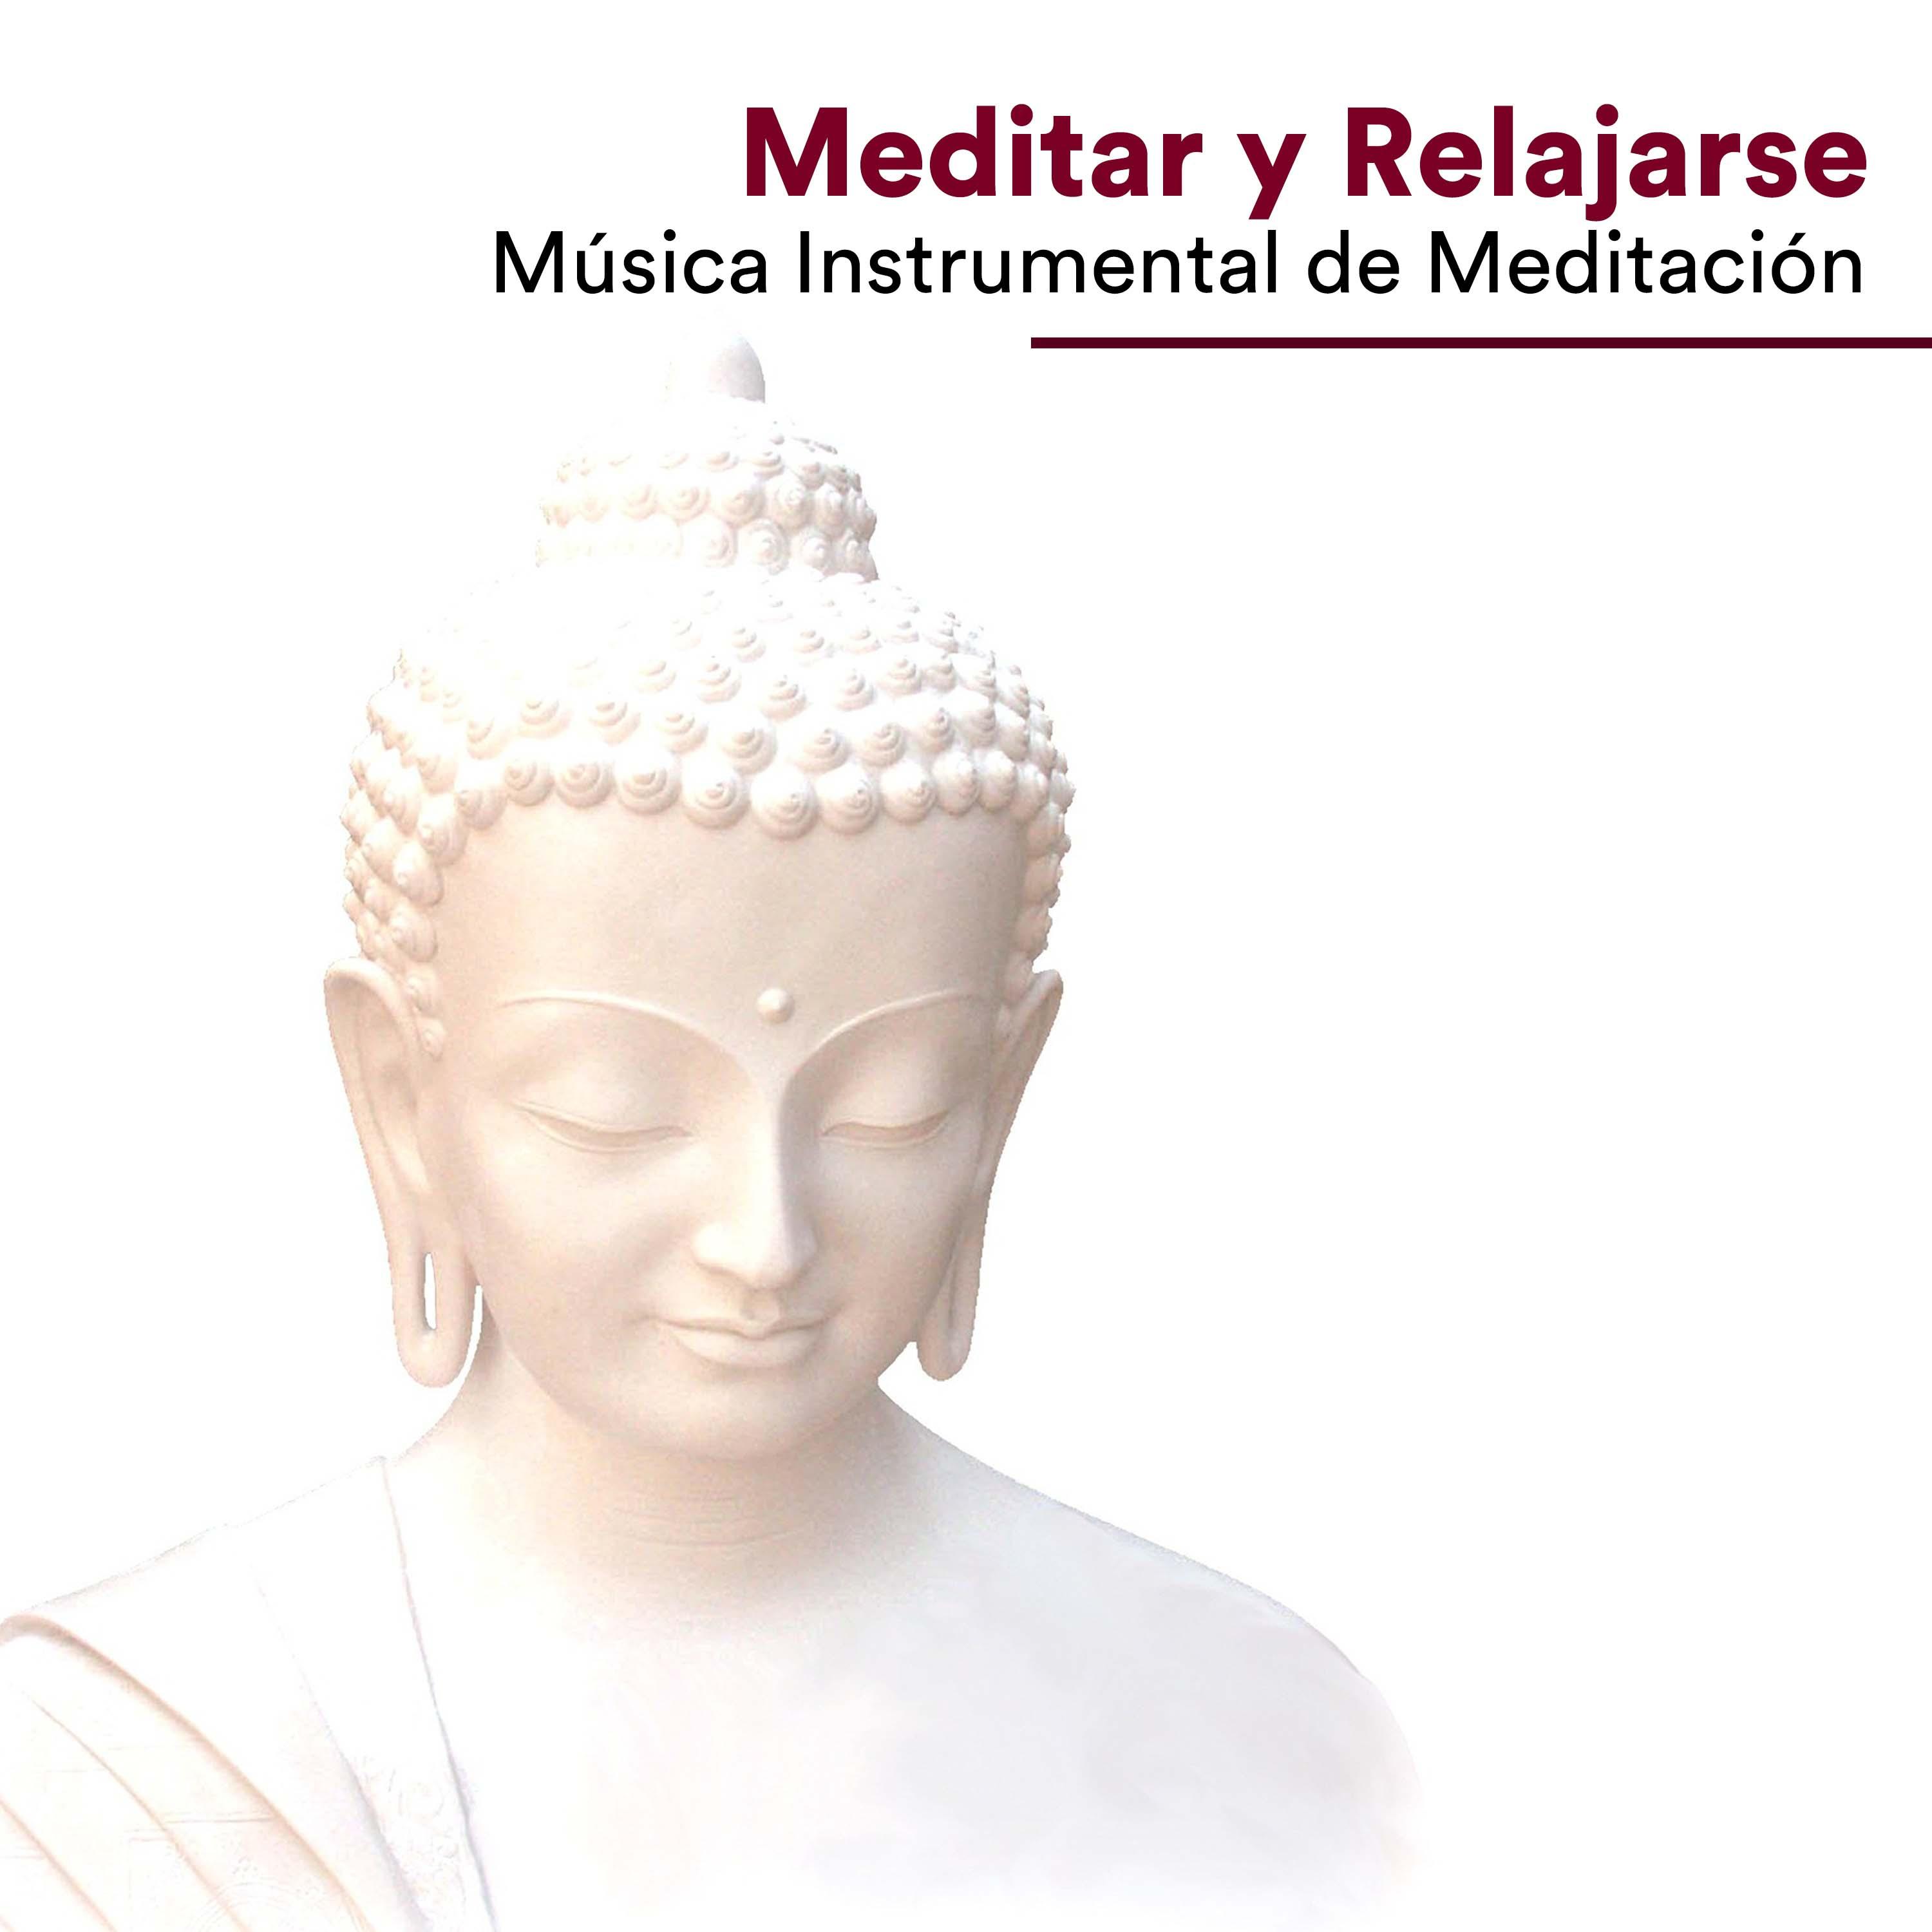 Meditar y Relajarse  Mu sica Instrumental de Meditacio n con los Sonidos de la Naturaleza